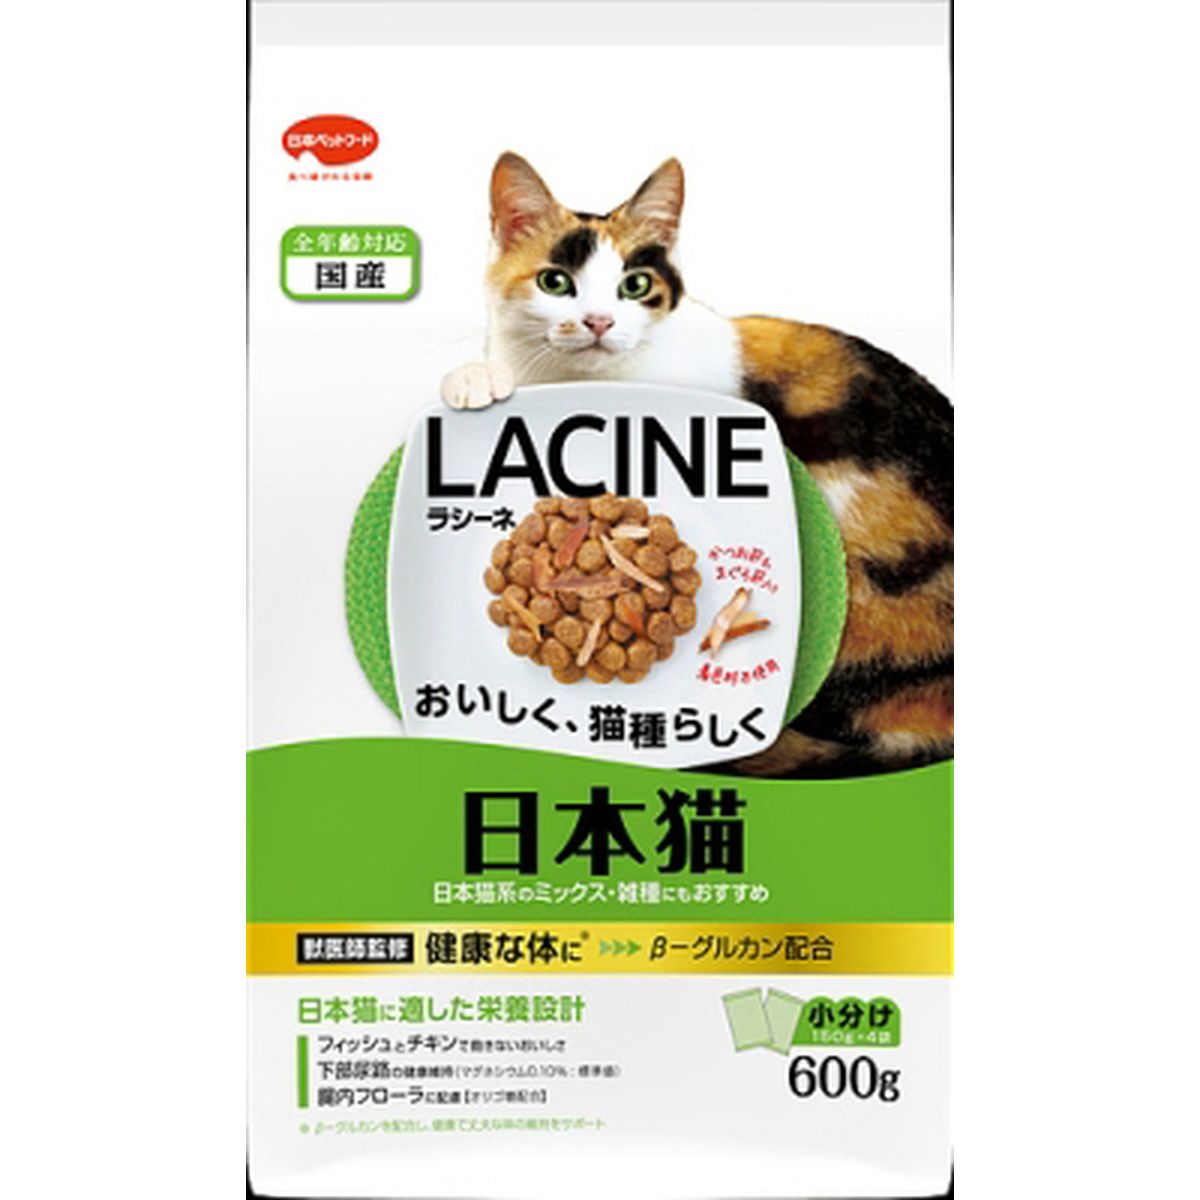 ラシーネ 日本猫600g×10袋